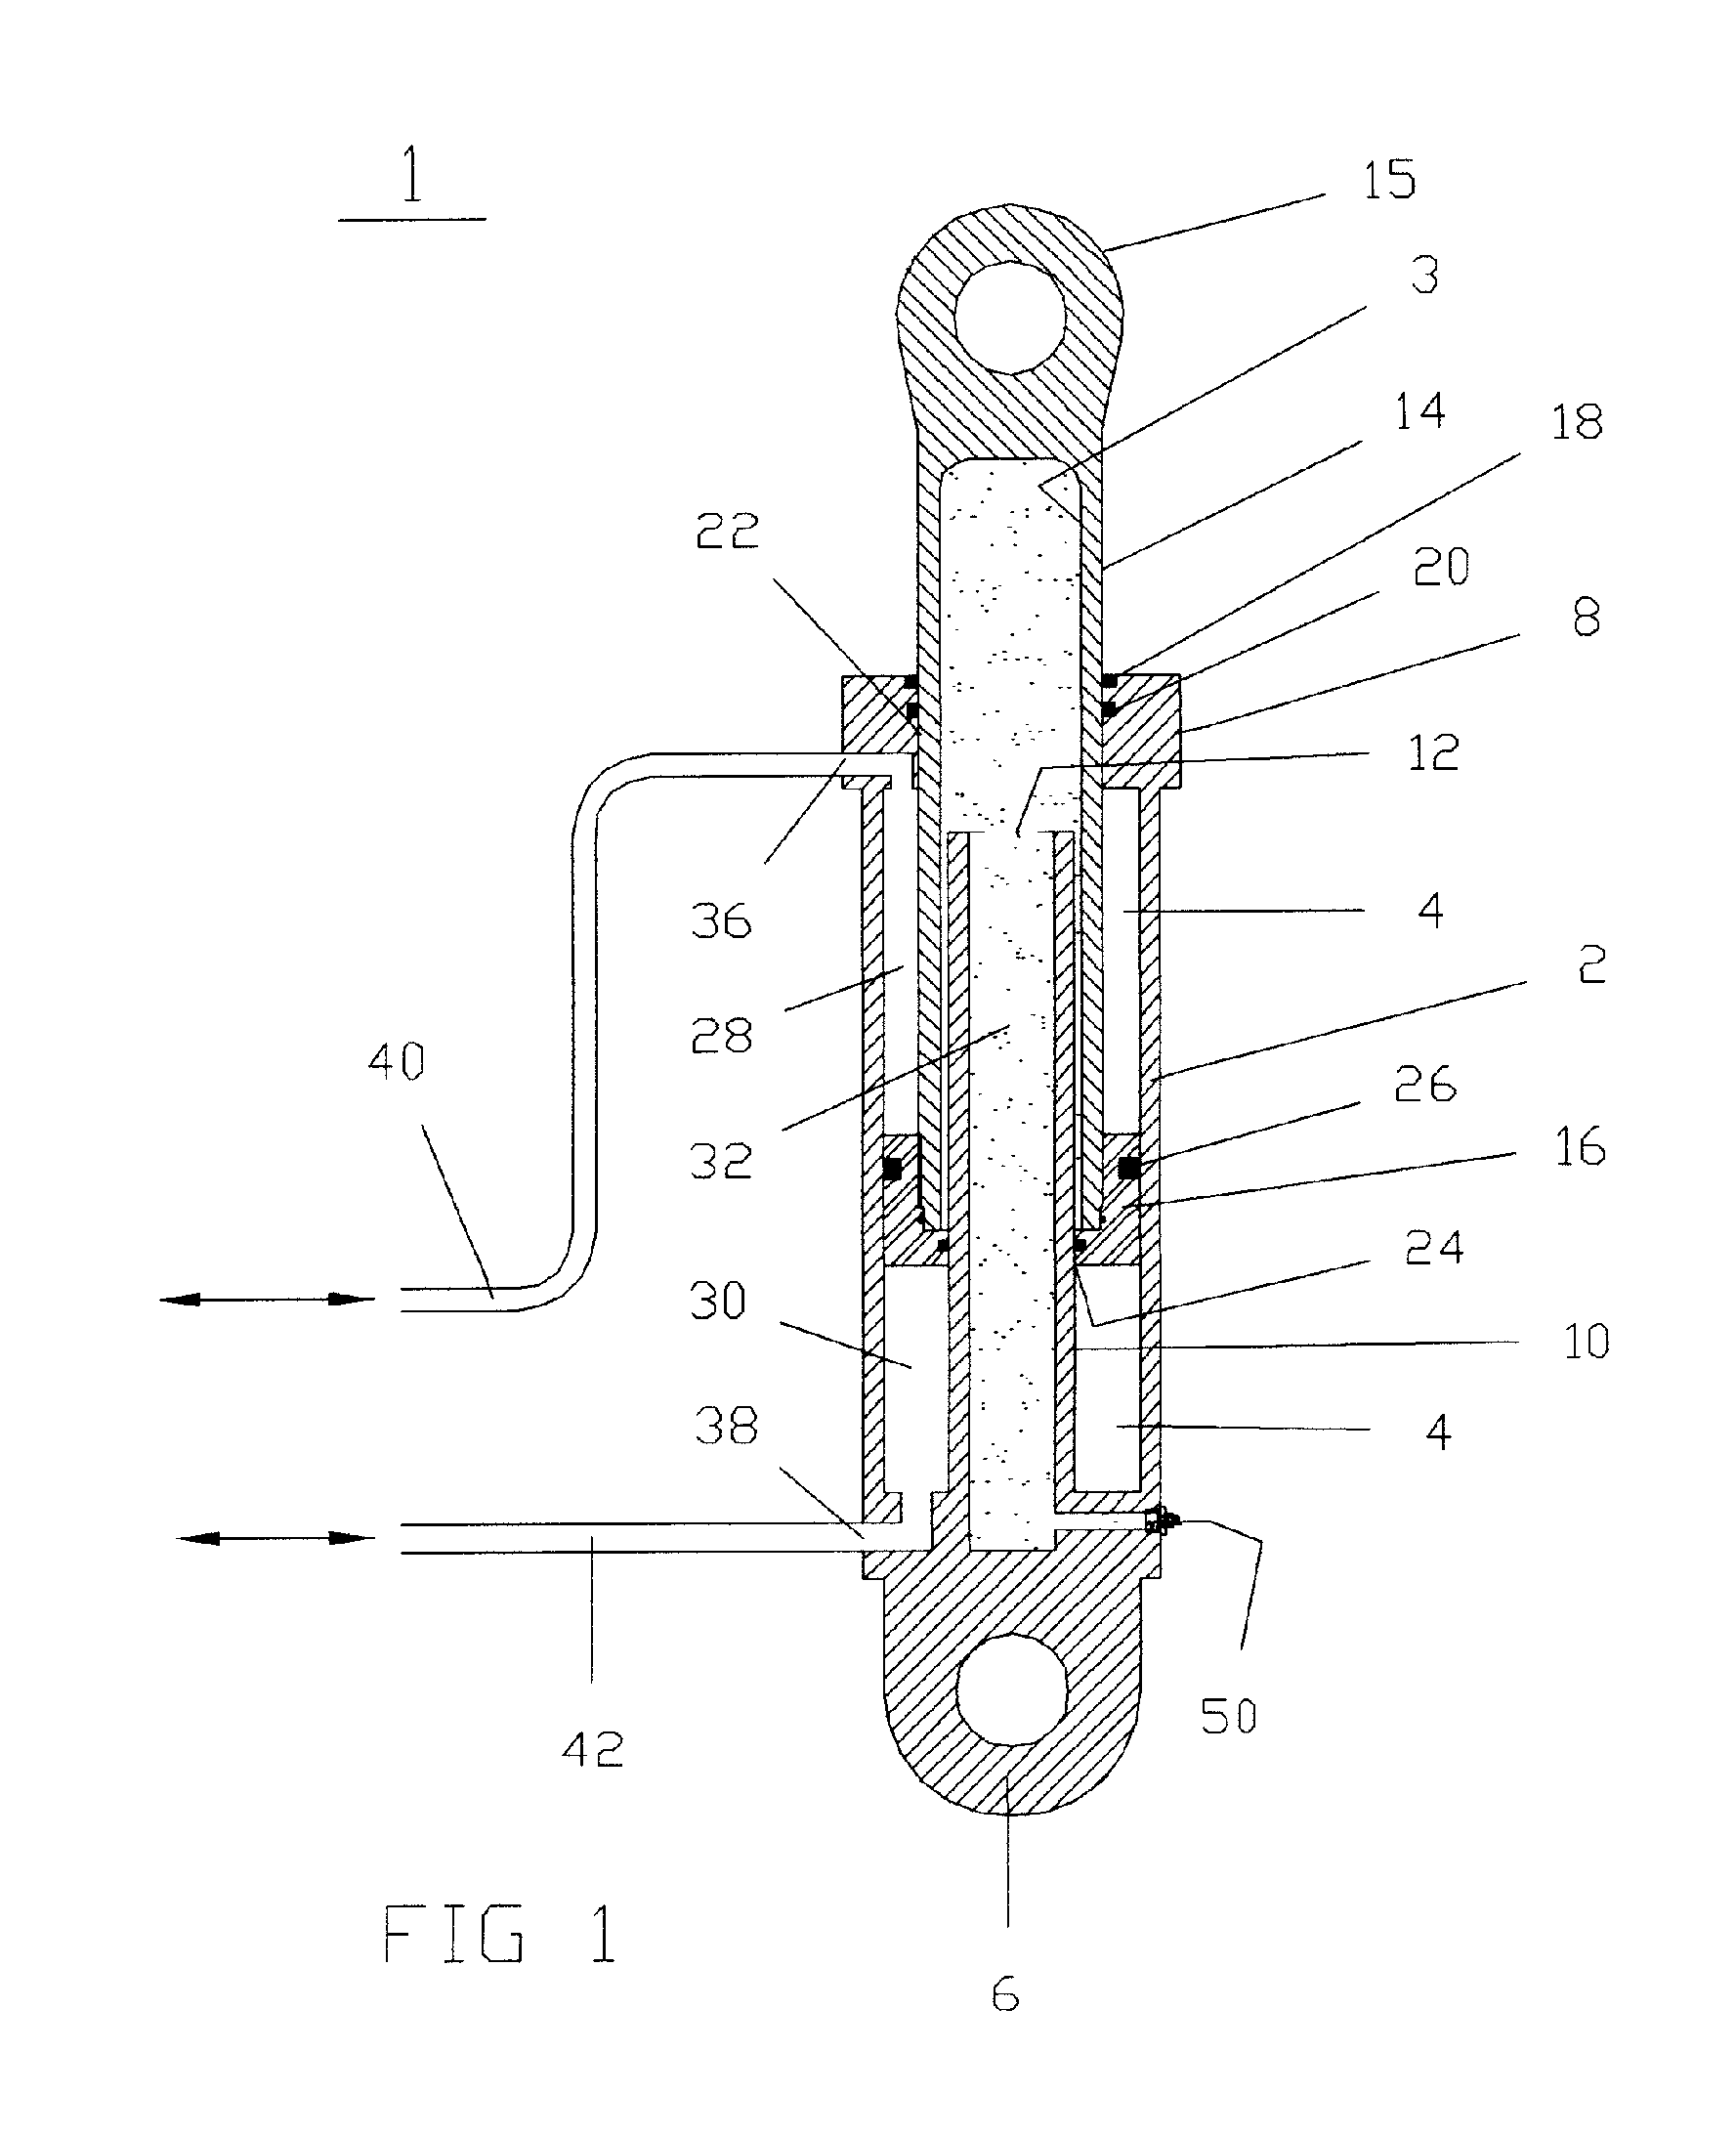 Gas-biased hydraulic cylinder